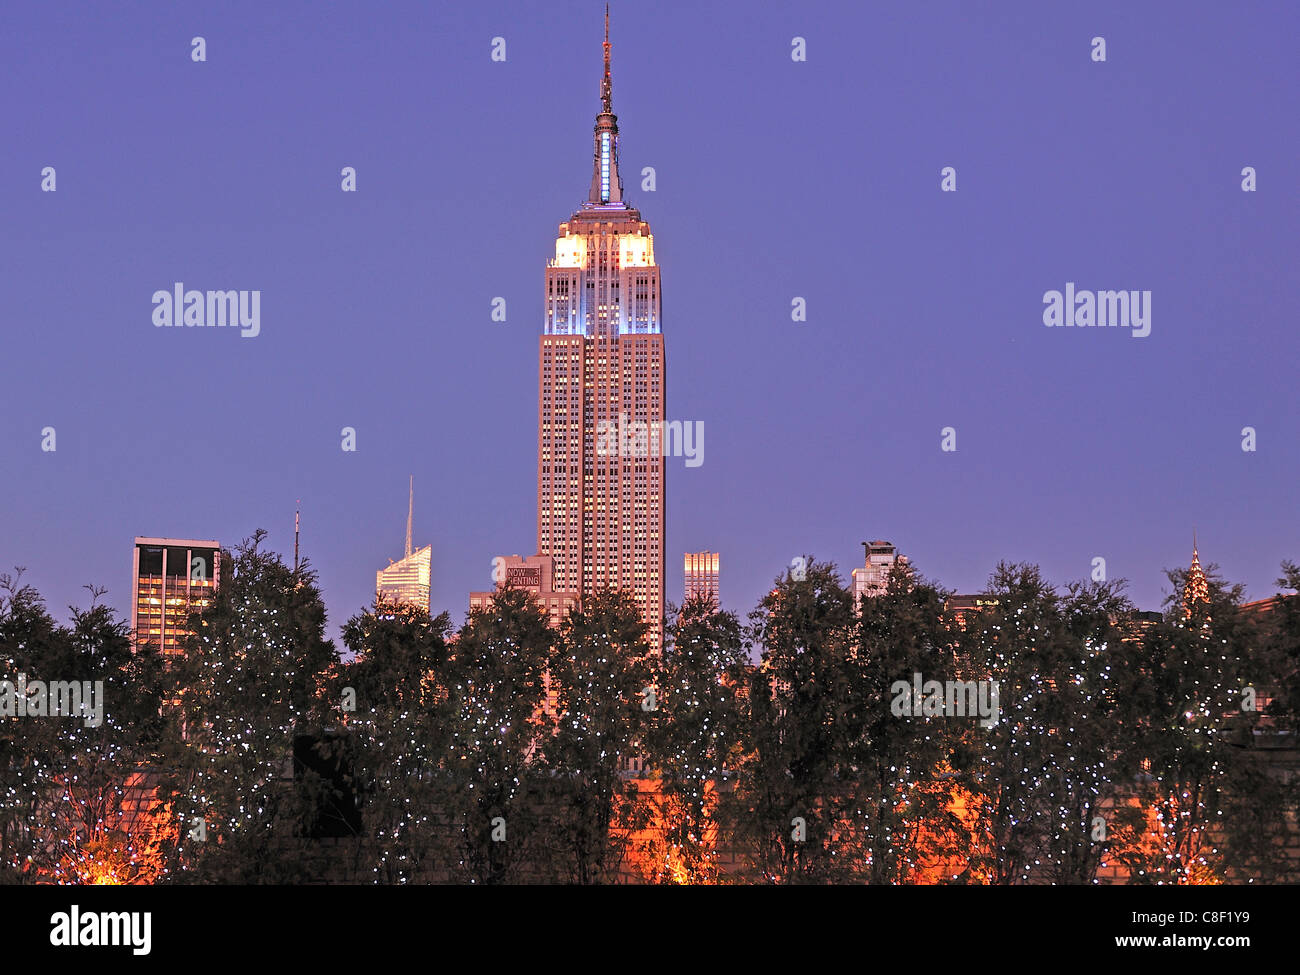 Weihnachten, Dekoration, Empire State Building, Manhattan, New York, USA, USA, Amerika, Nacht Stockfoto